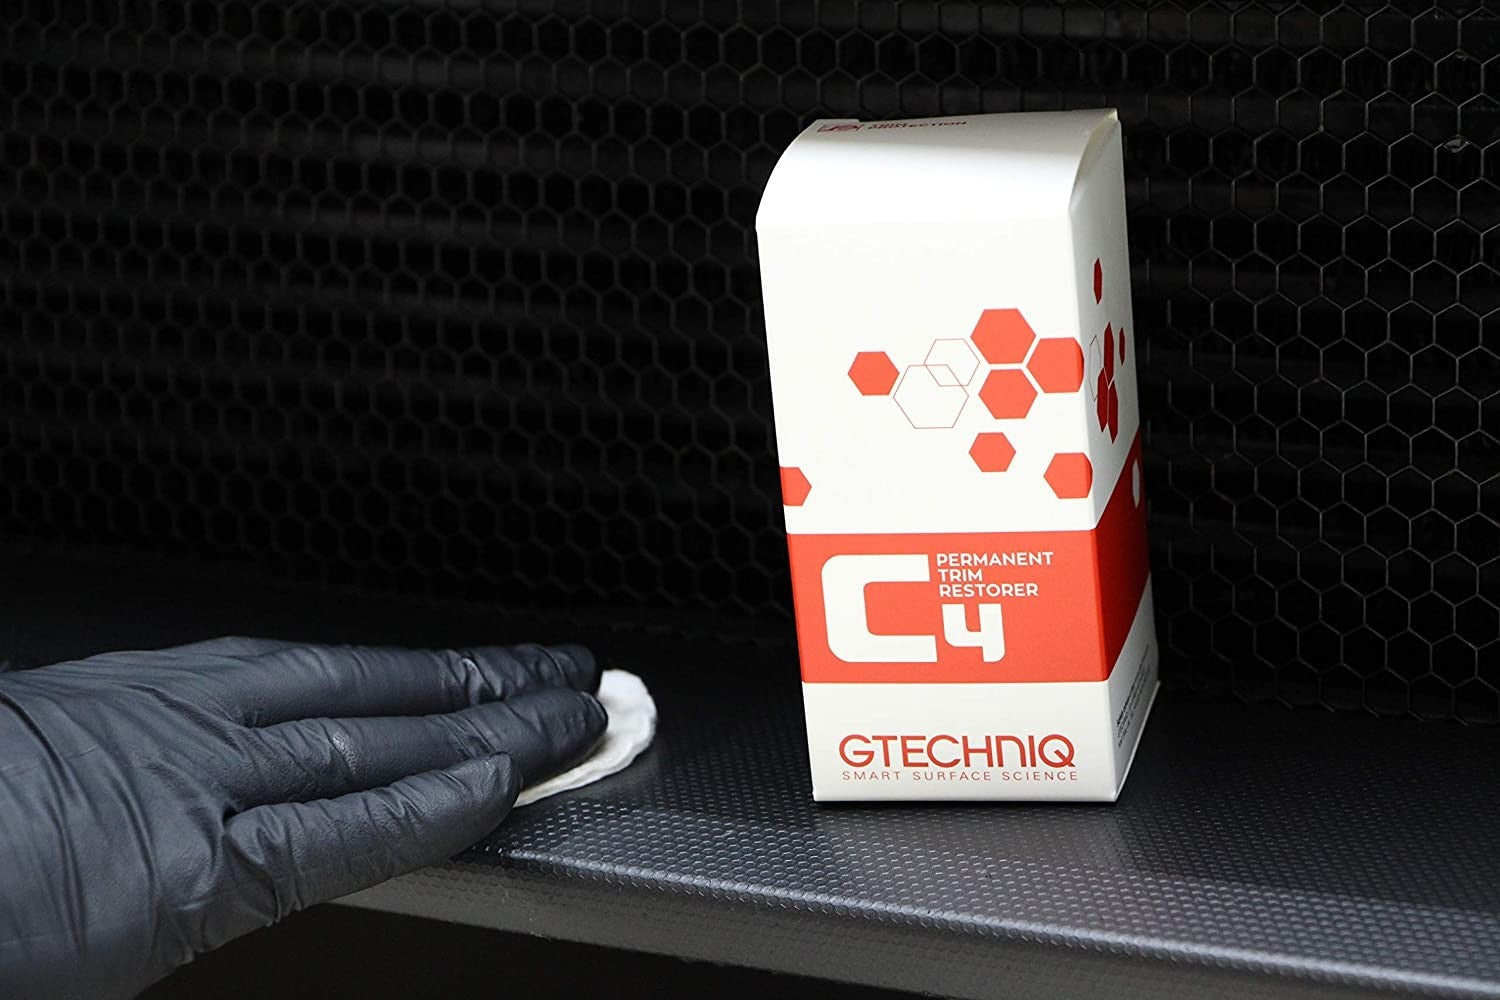 Tratament restaurare plastic exterior Gtechniq C4 Permanent Trim Restorer - Detailing Auto